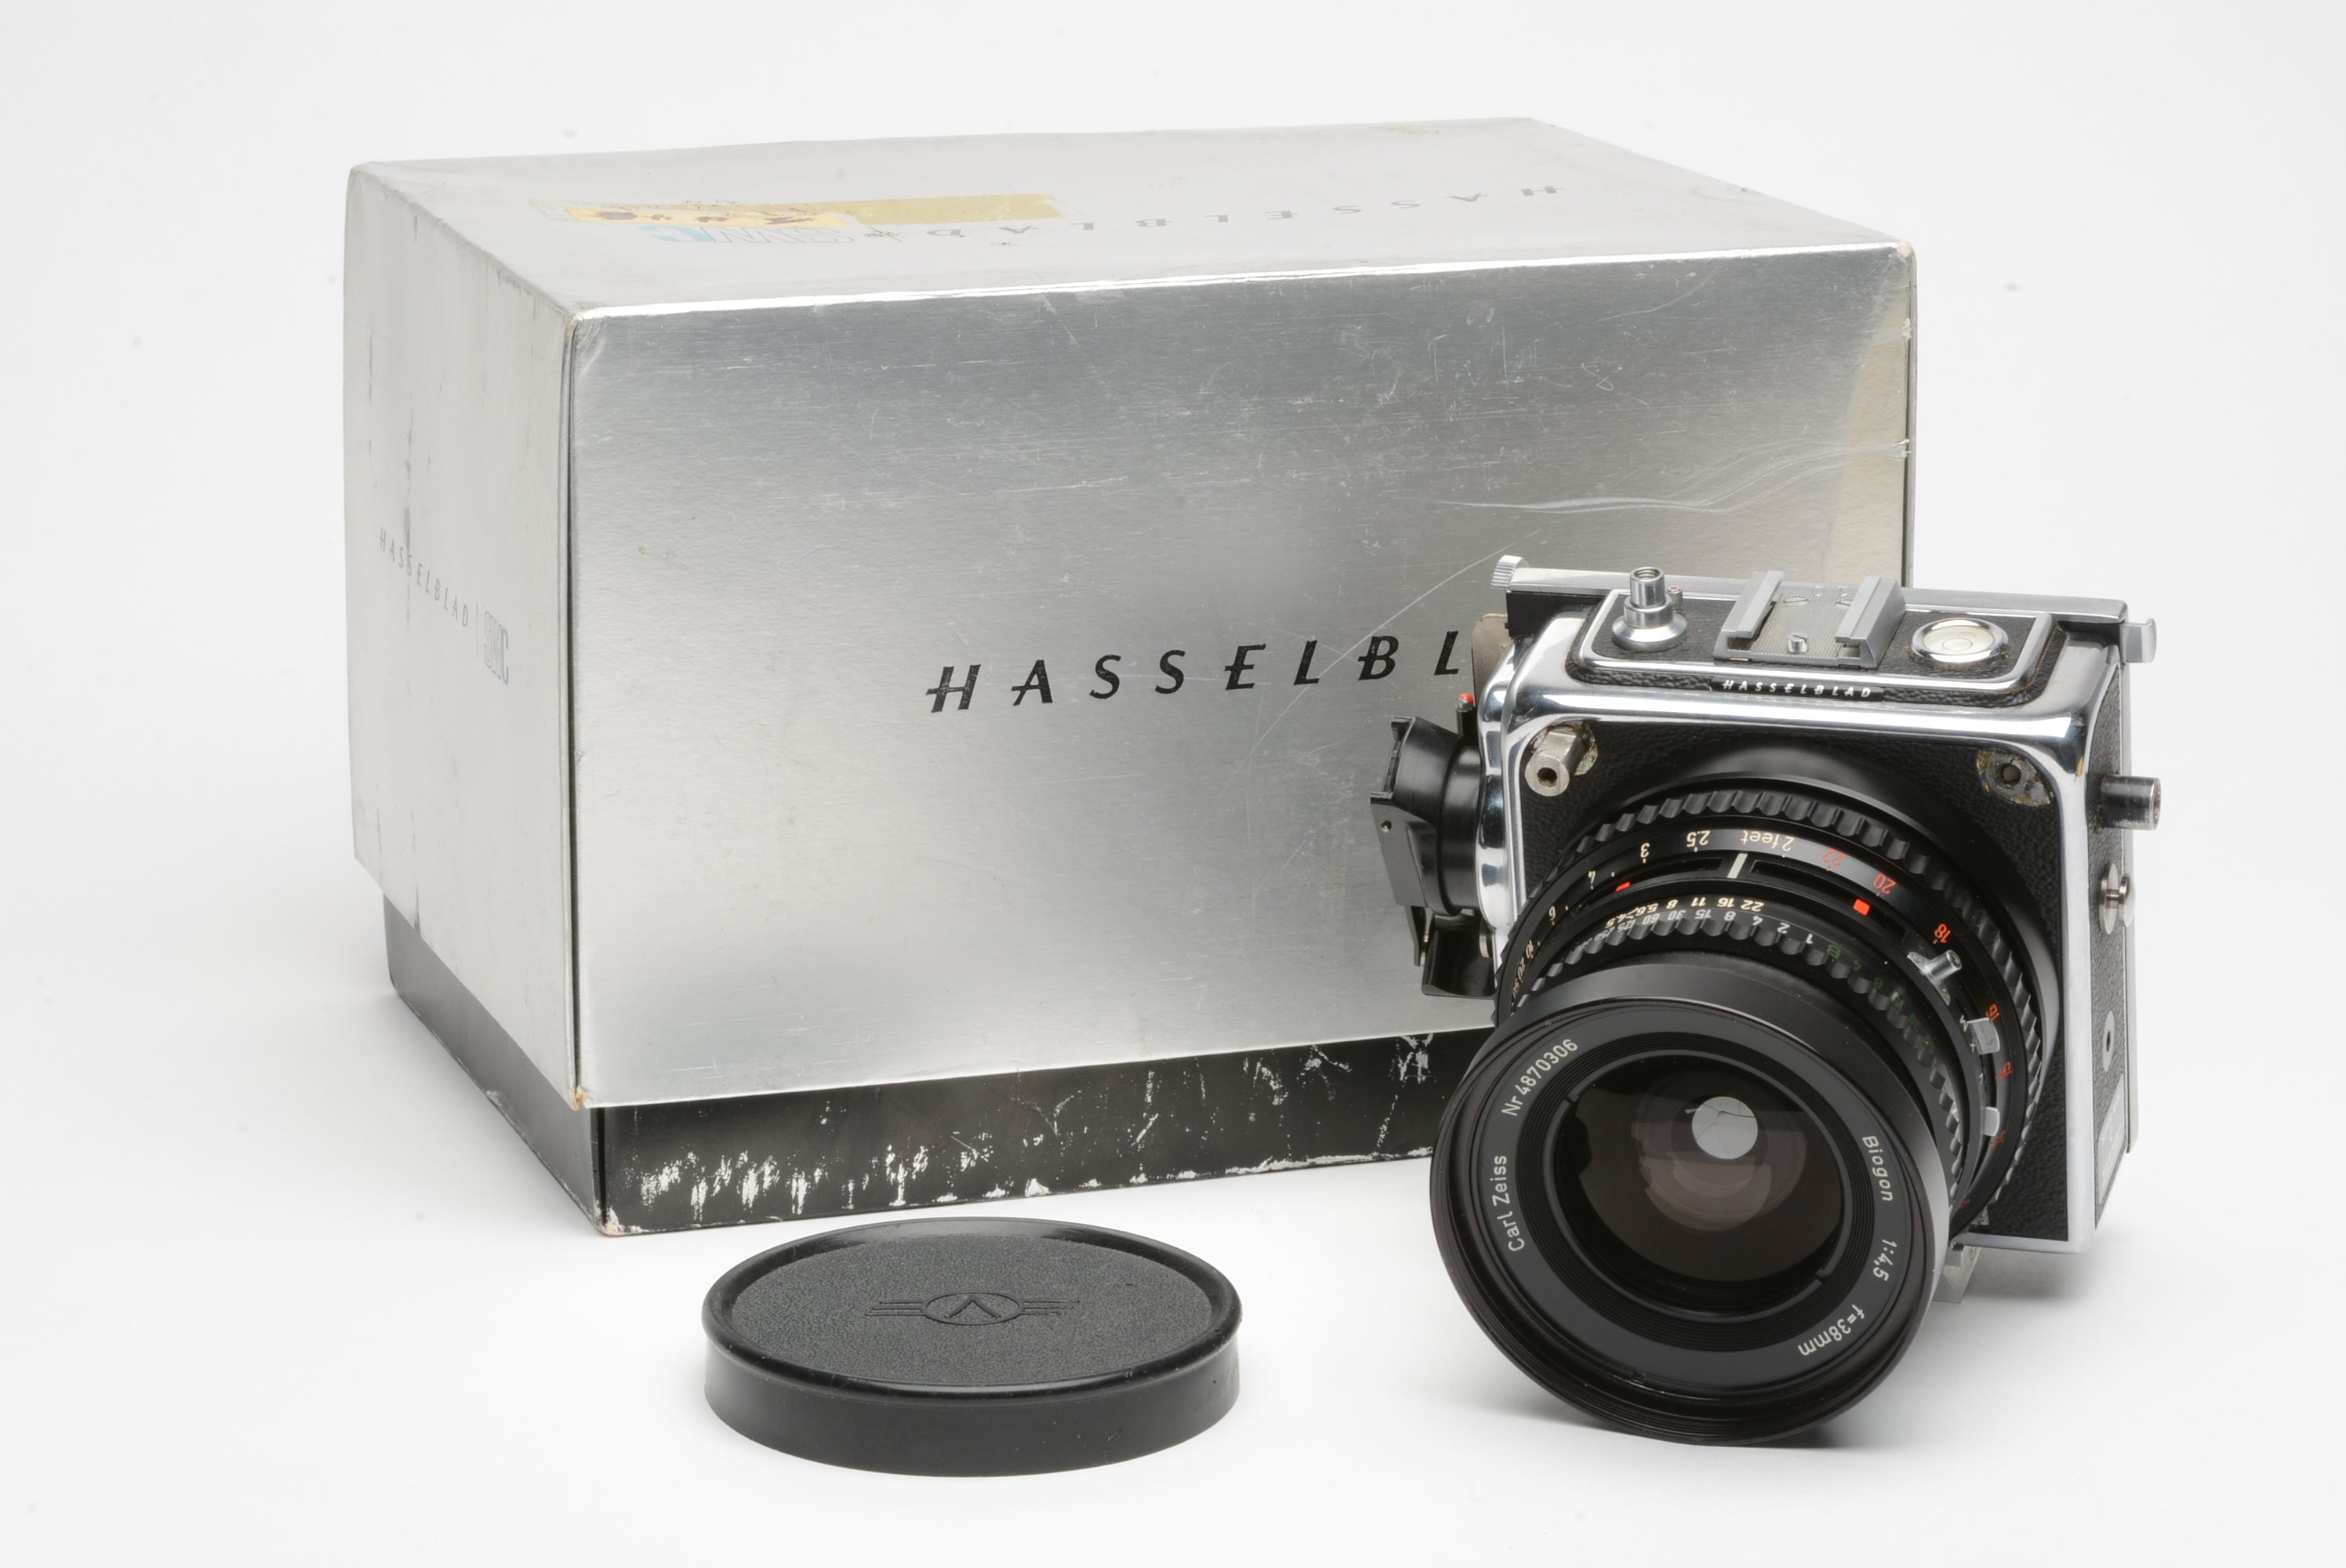 Hasselblad SWC Body w/Zeiss Biogon 38mm f4.5 lens, Cut sheet